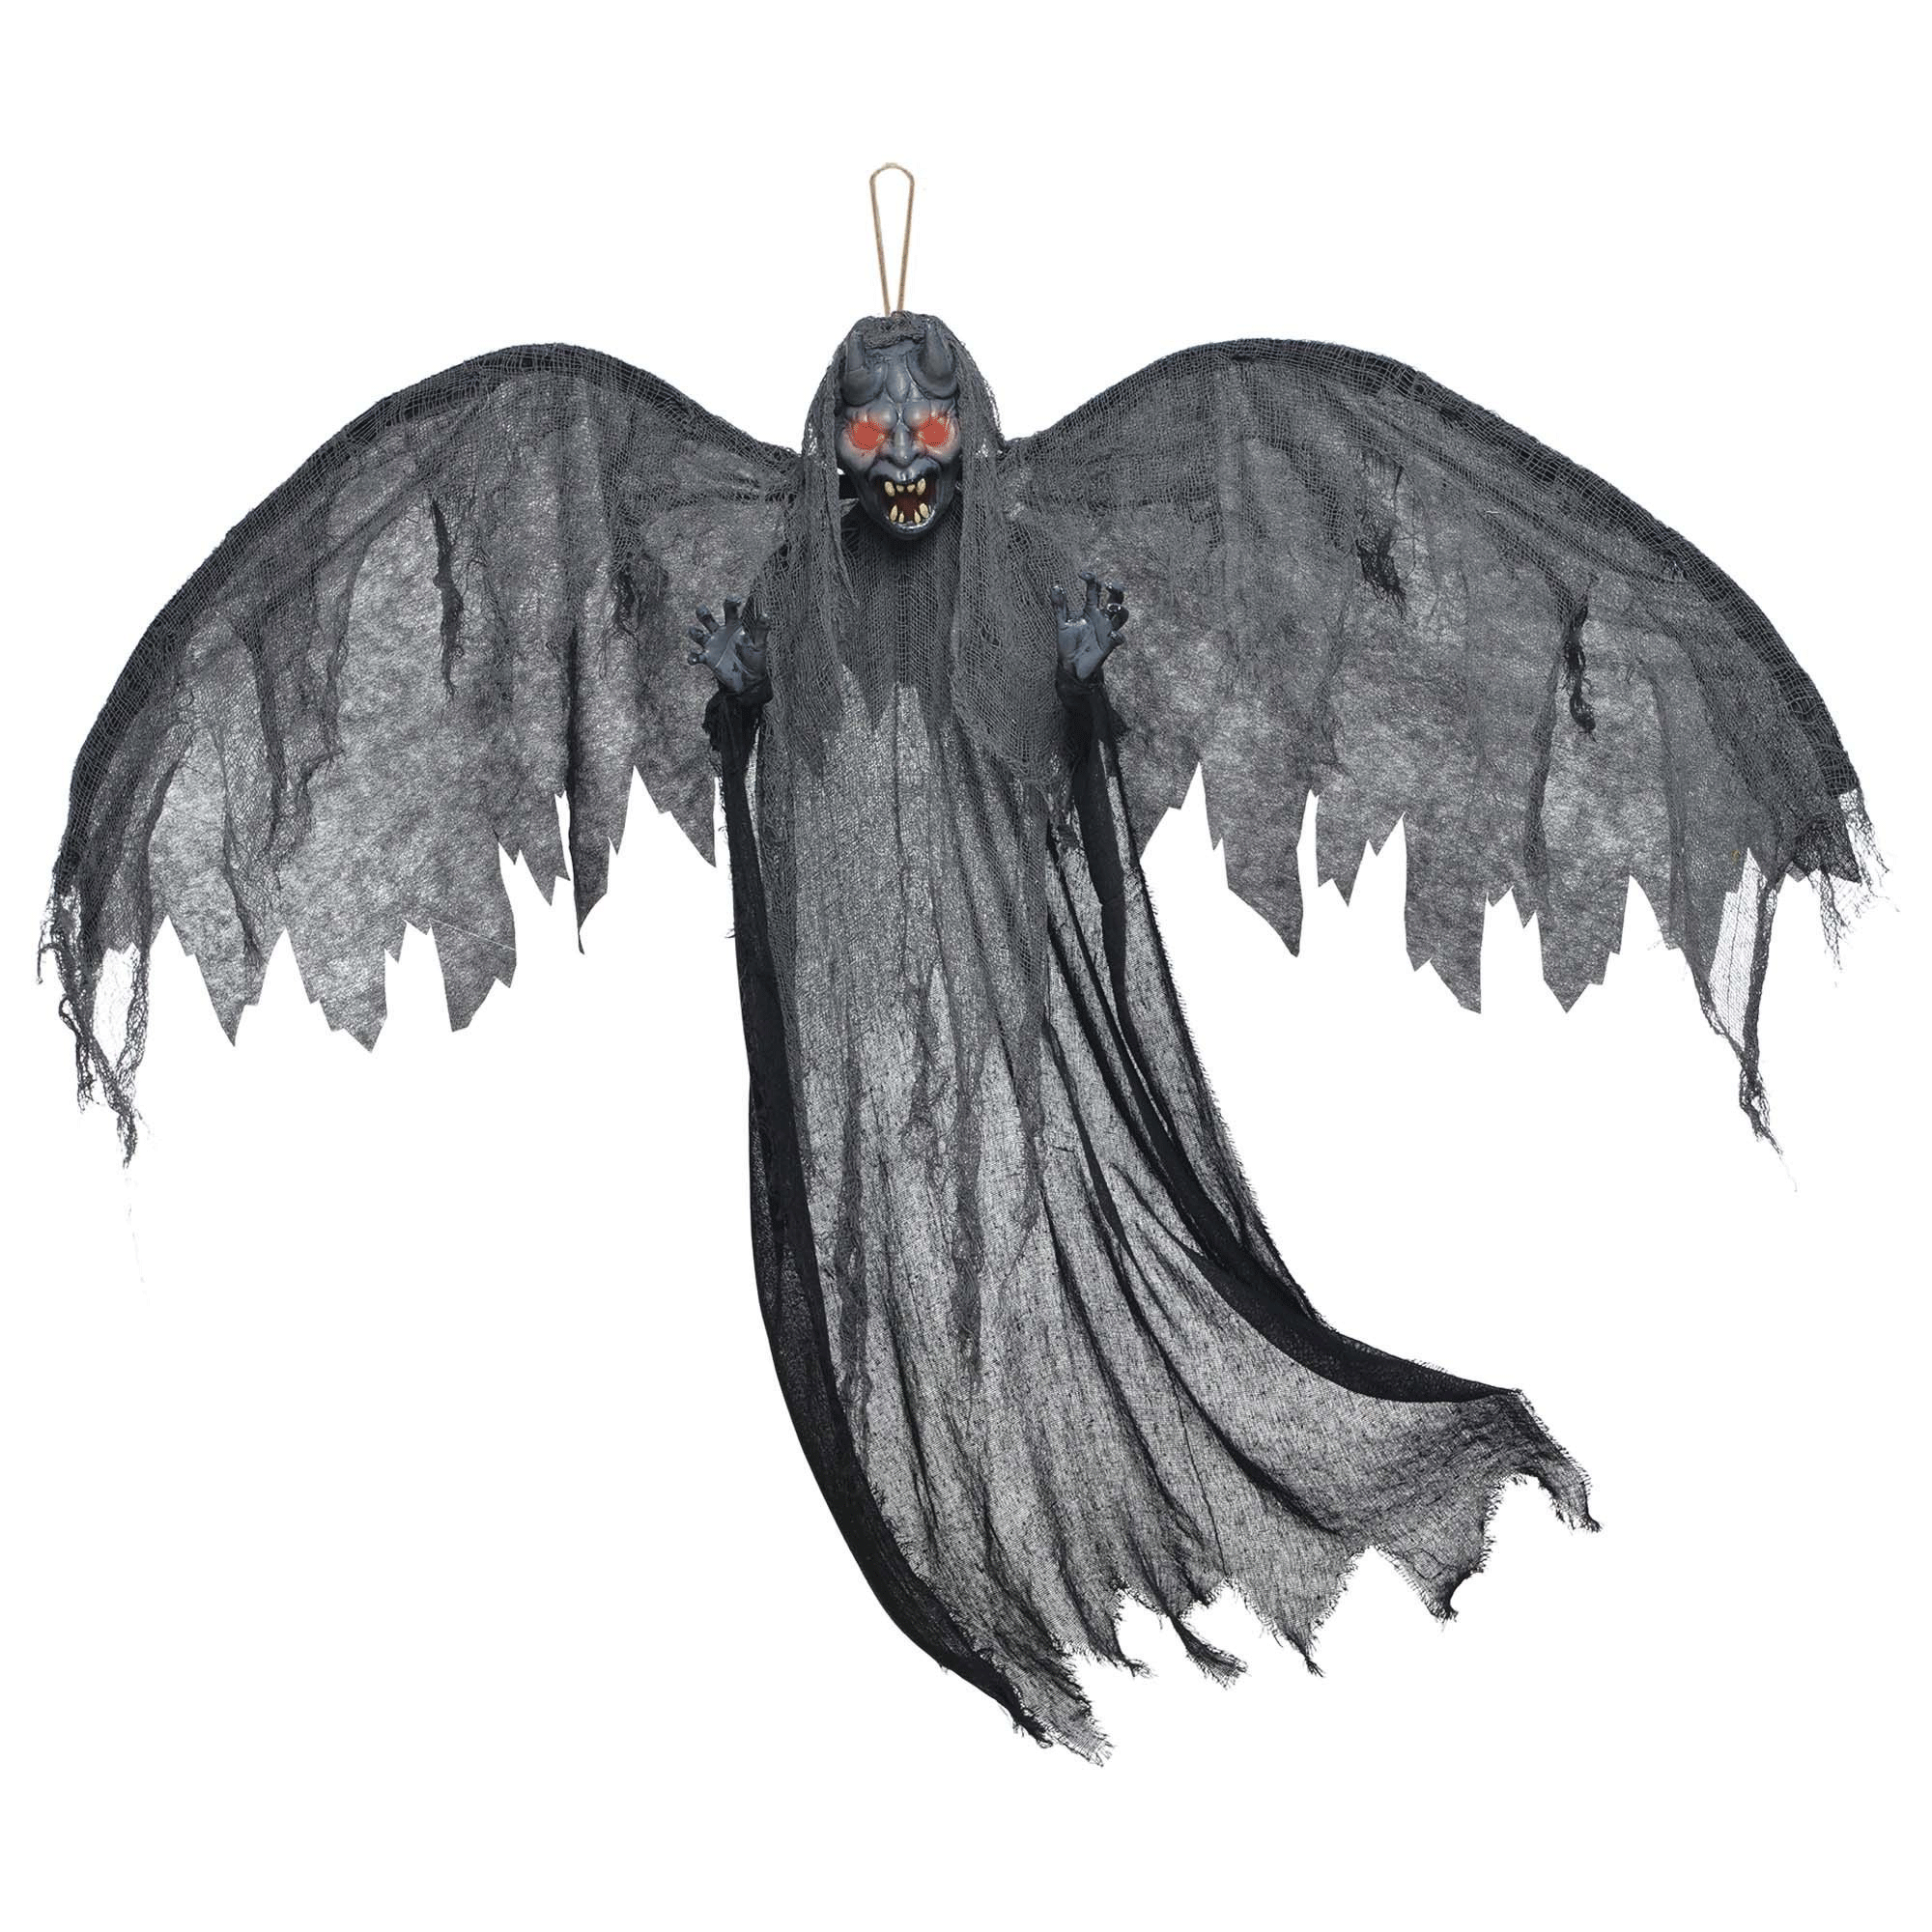 Winged Gargoyle With Light Up Eyes